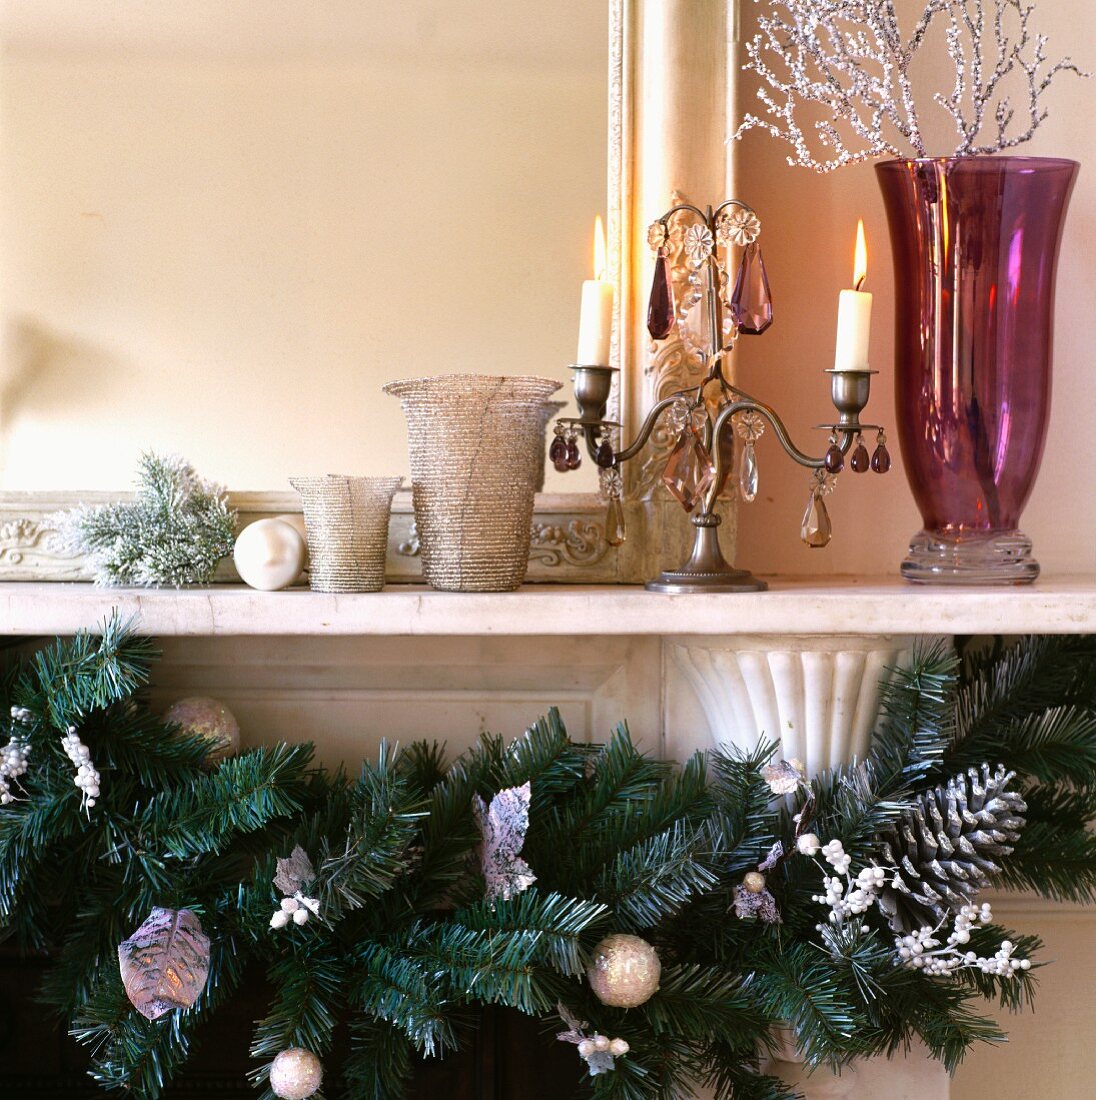 Leuchter aus Zinn, violette Glasvase und Weihnachtsdeko in Silber auf weißem Kaminsims